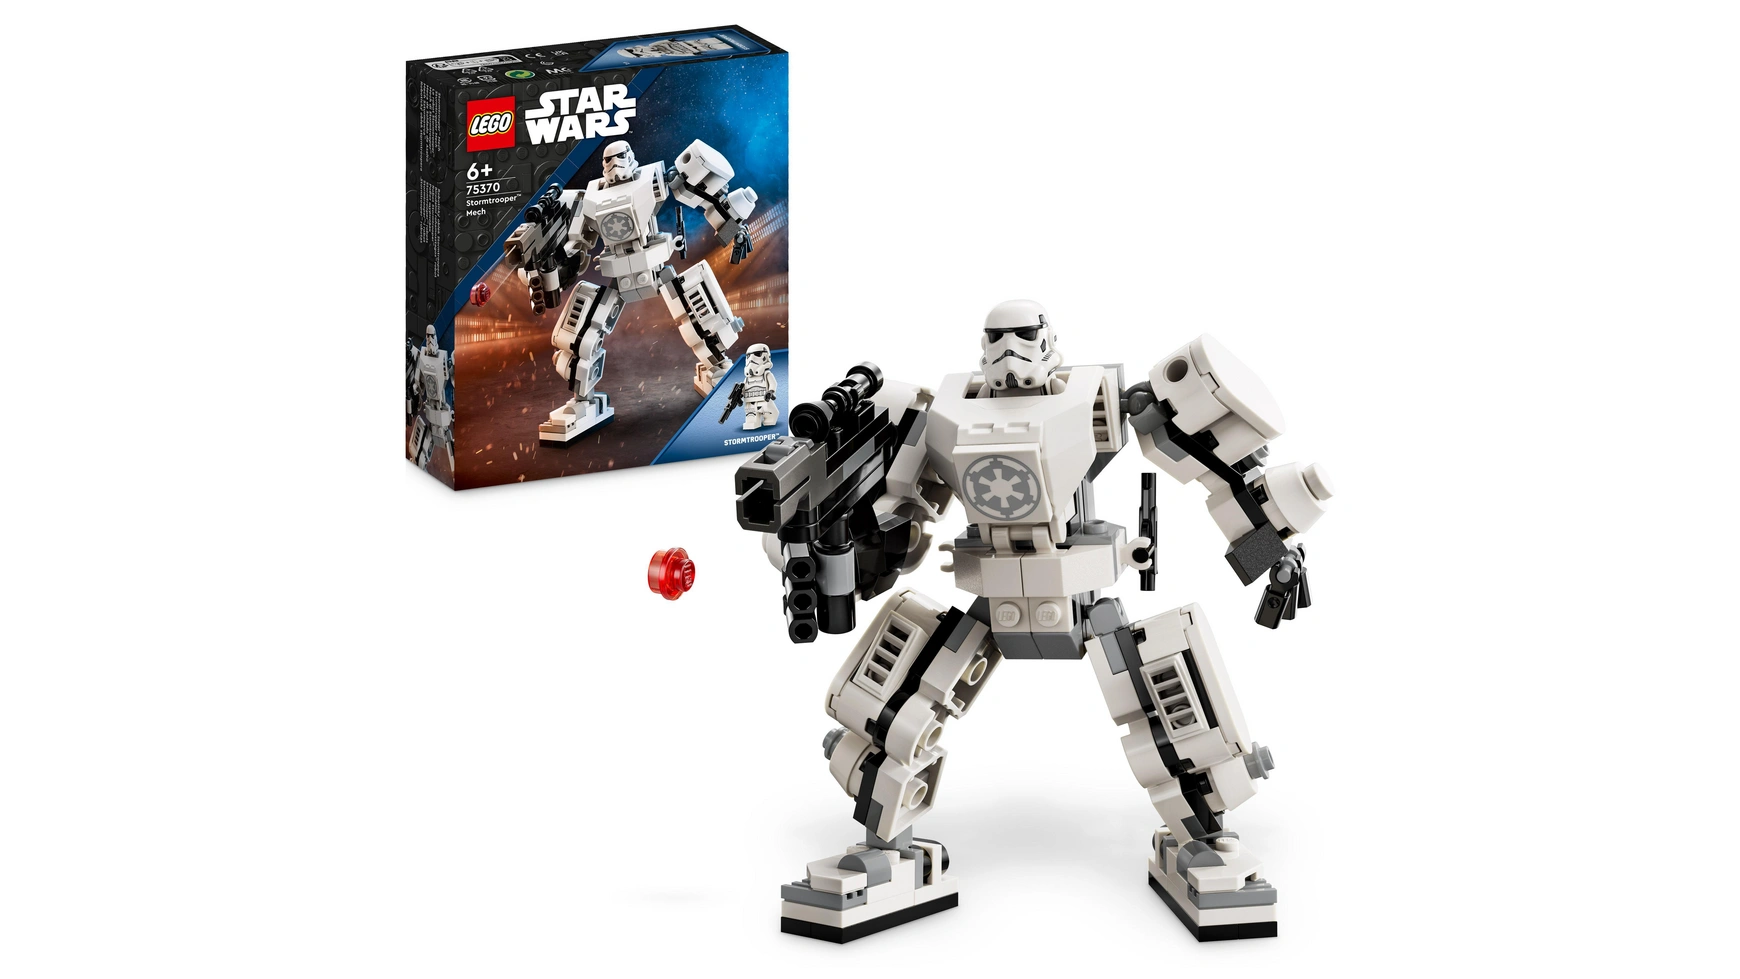 Lego Star Wars Набор роботов-штурмовиков, фигурка, которую нужно собрать